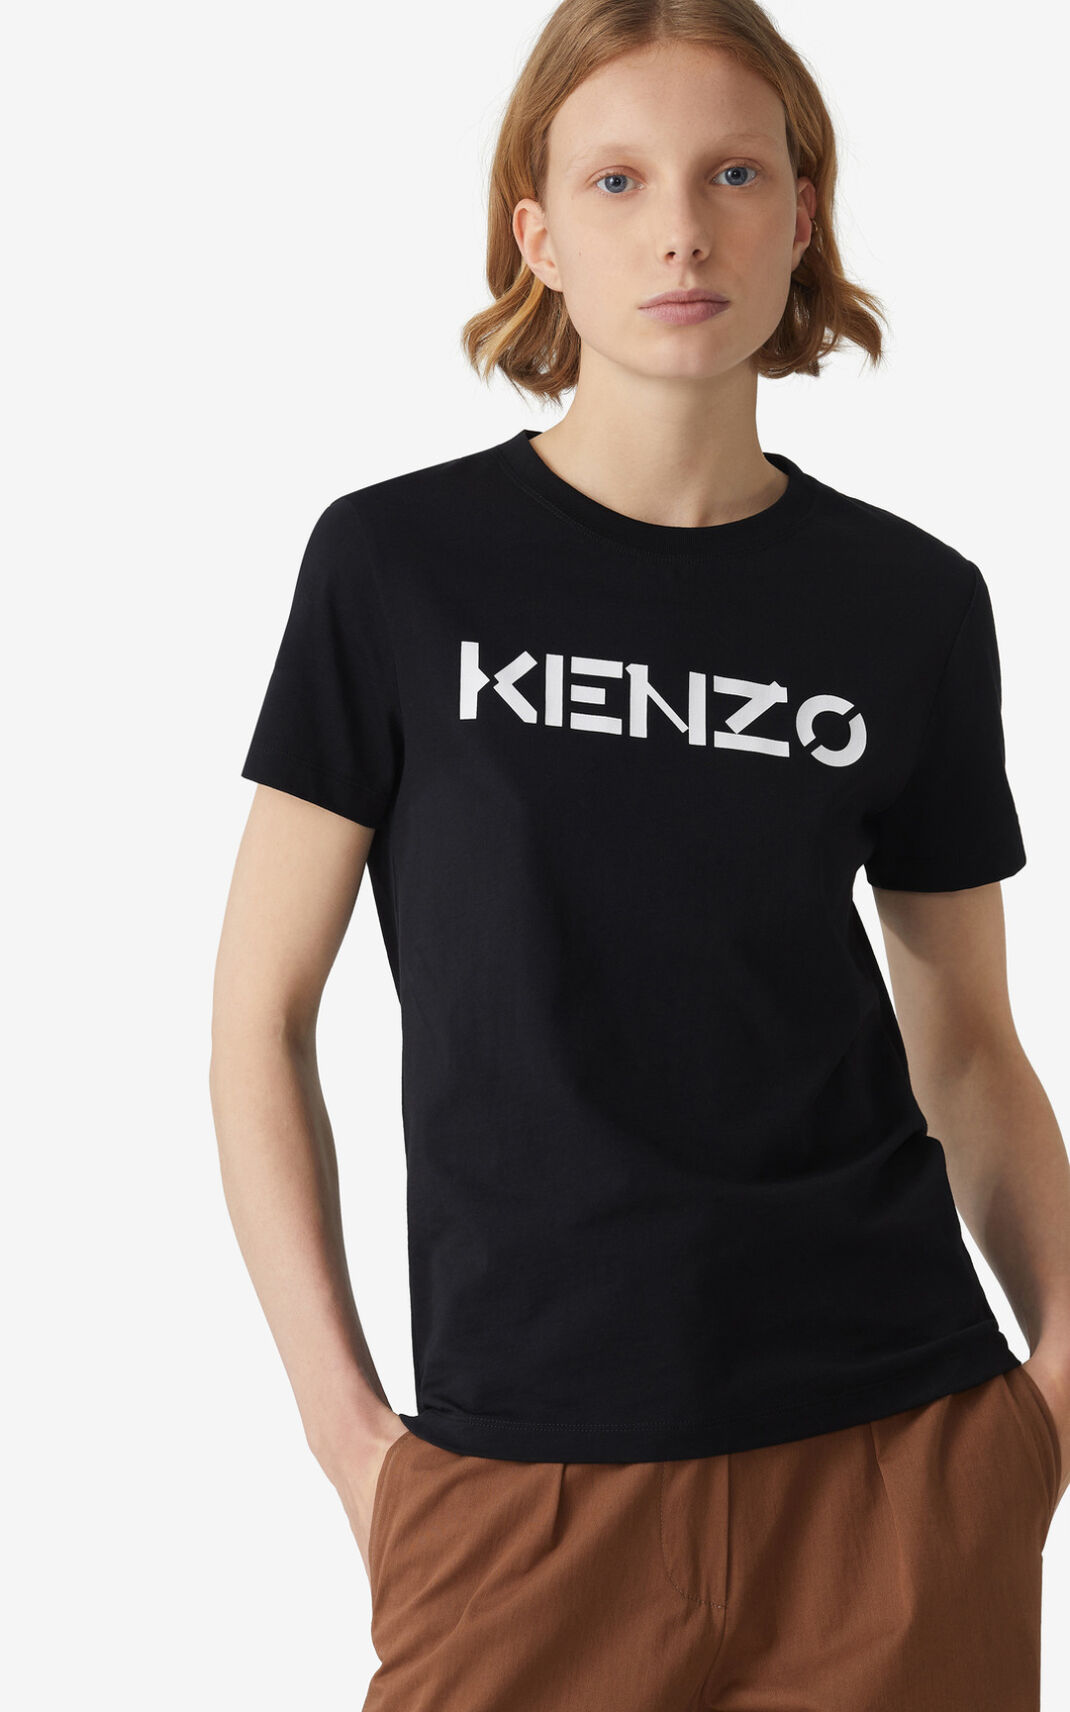 Kenzo Logo Tシャツ レディース 黒 - IOBLSK267